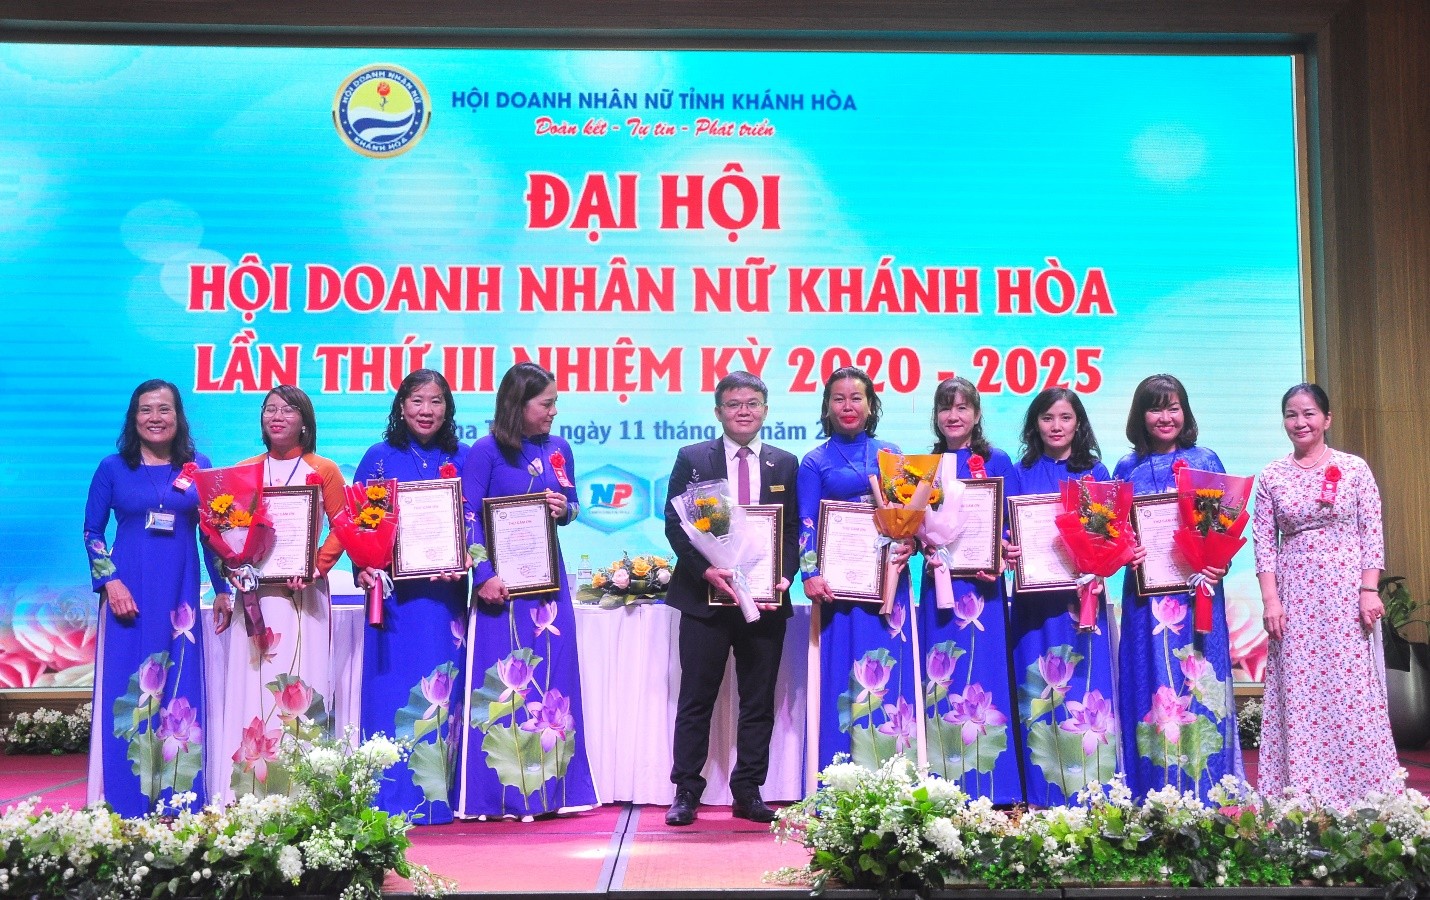 Các Doanh nghiệp đồng hành cùng Đại Hội nhận chứng nhận tri ân từ Hội Doanh Nhân Nữ